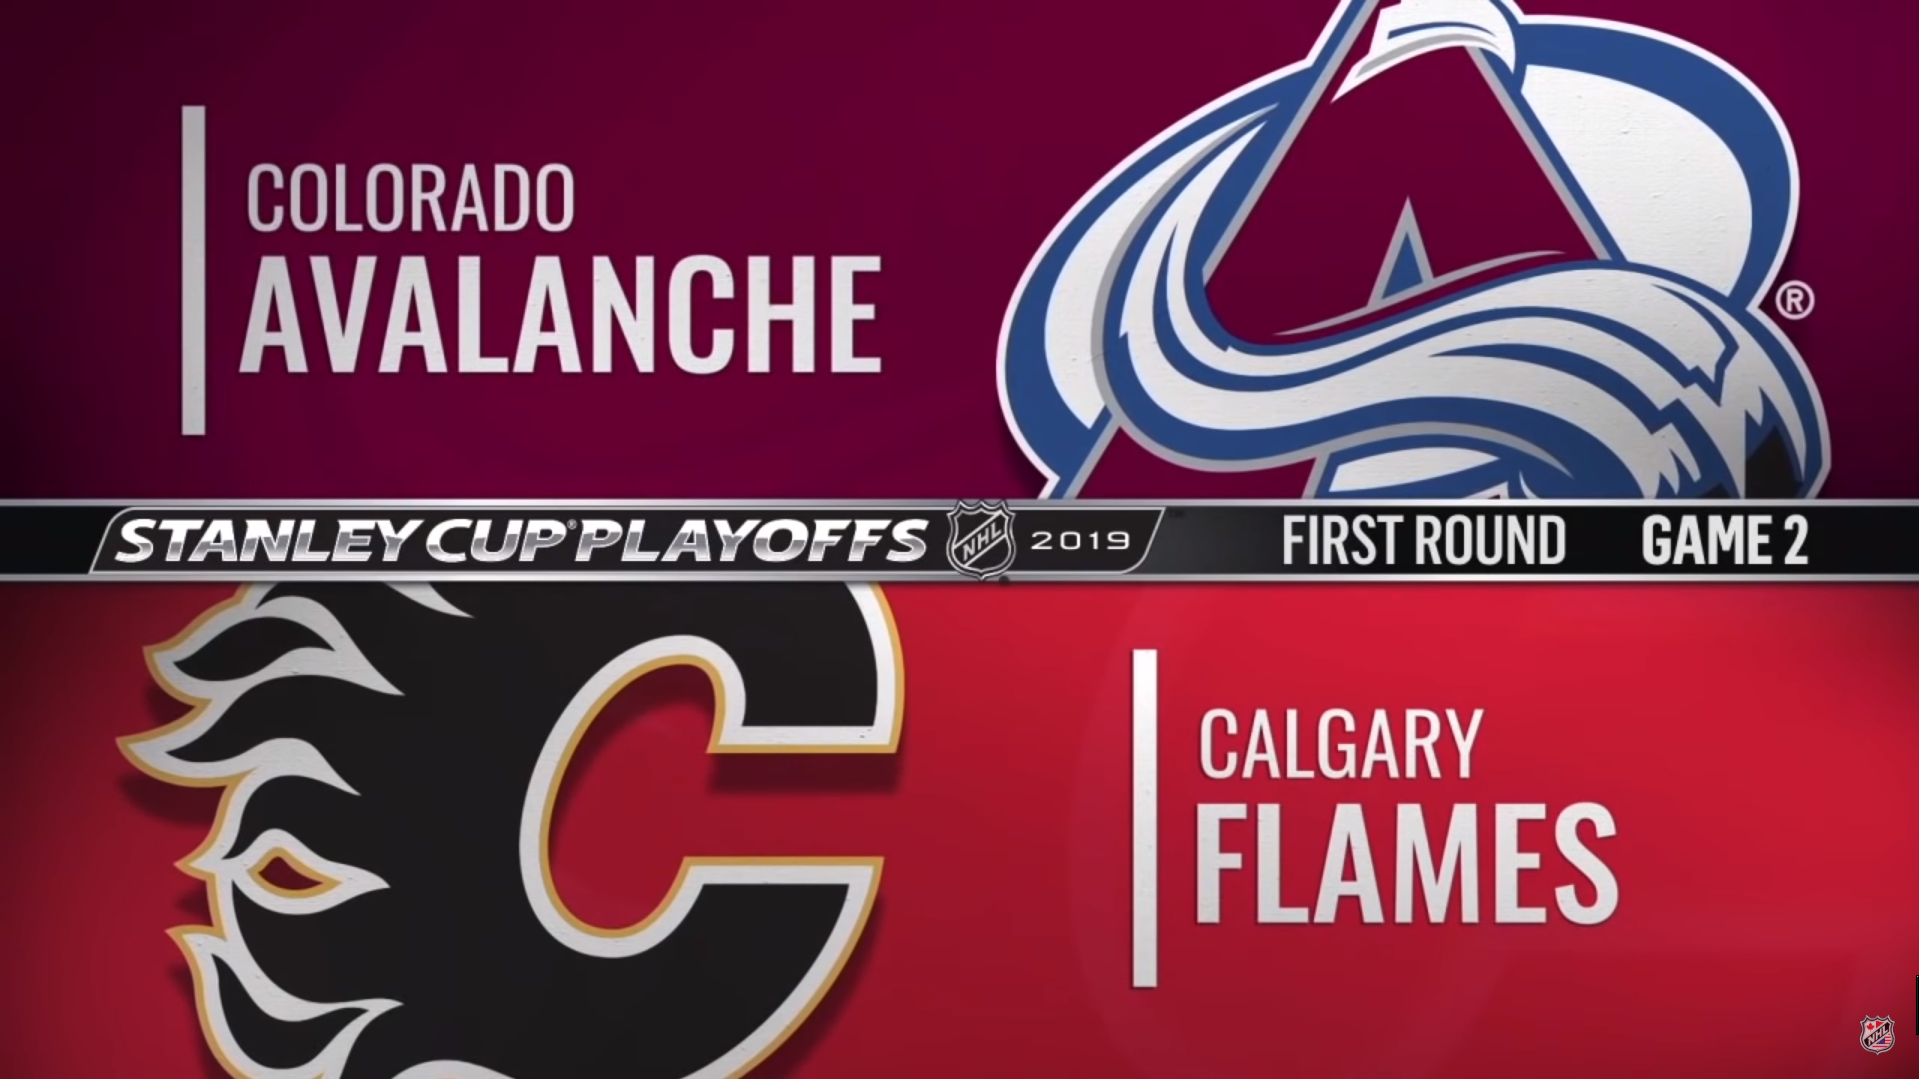 Calgary Flames - Colorado Avalanche